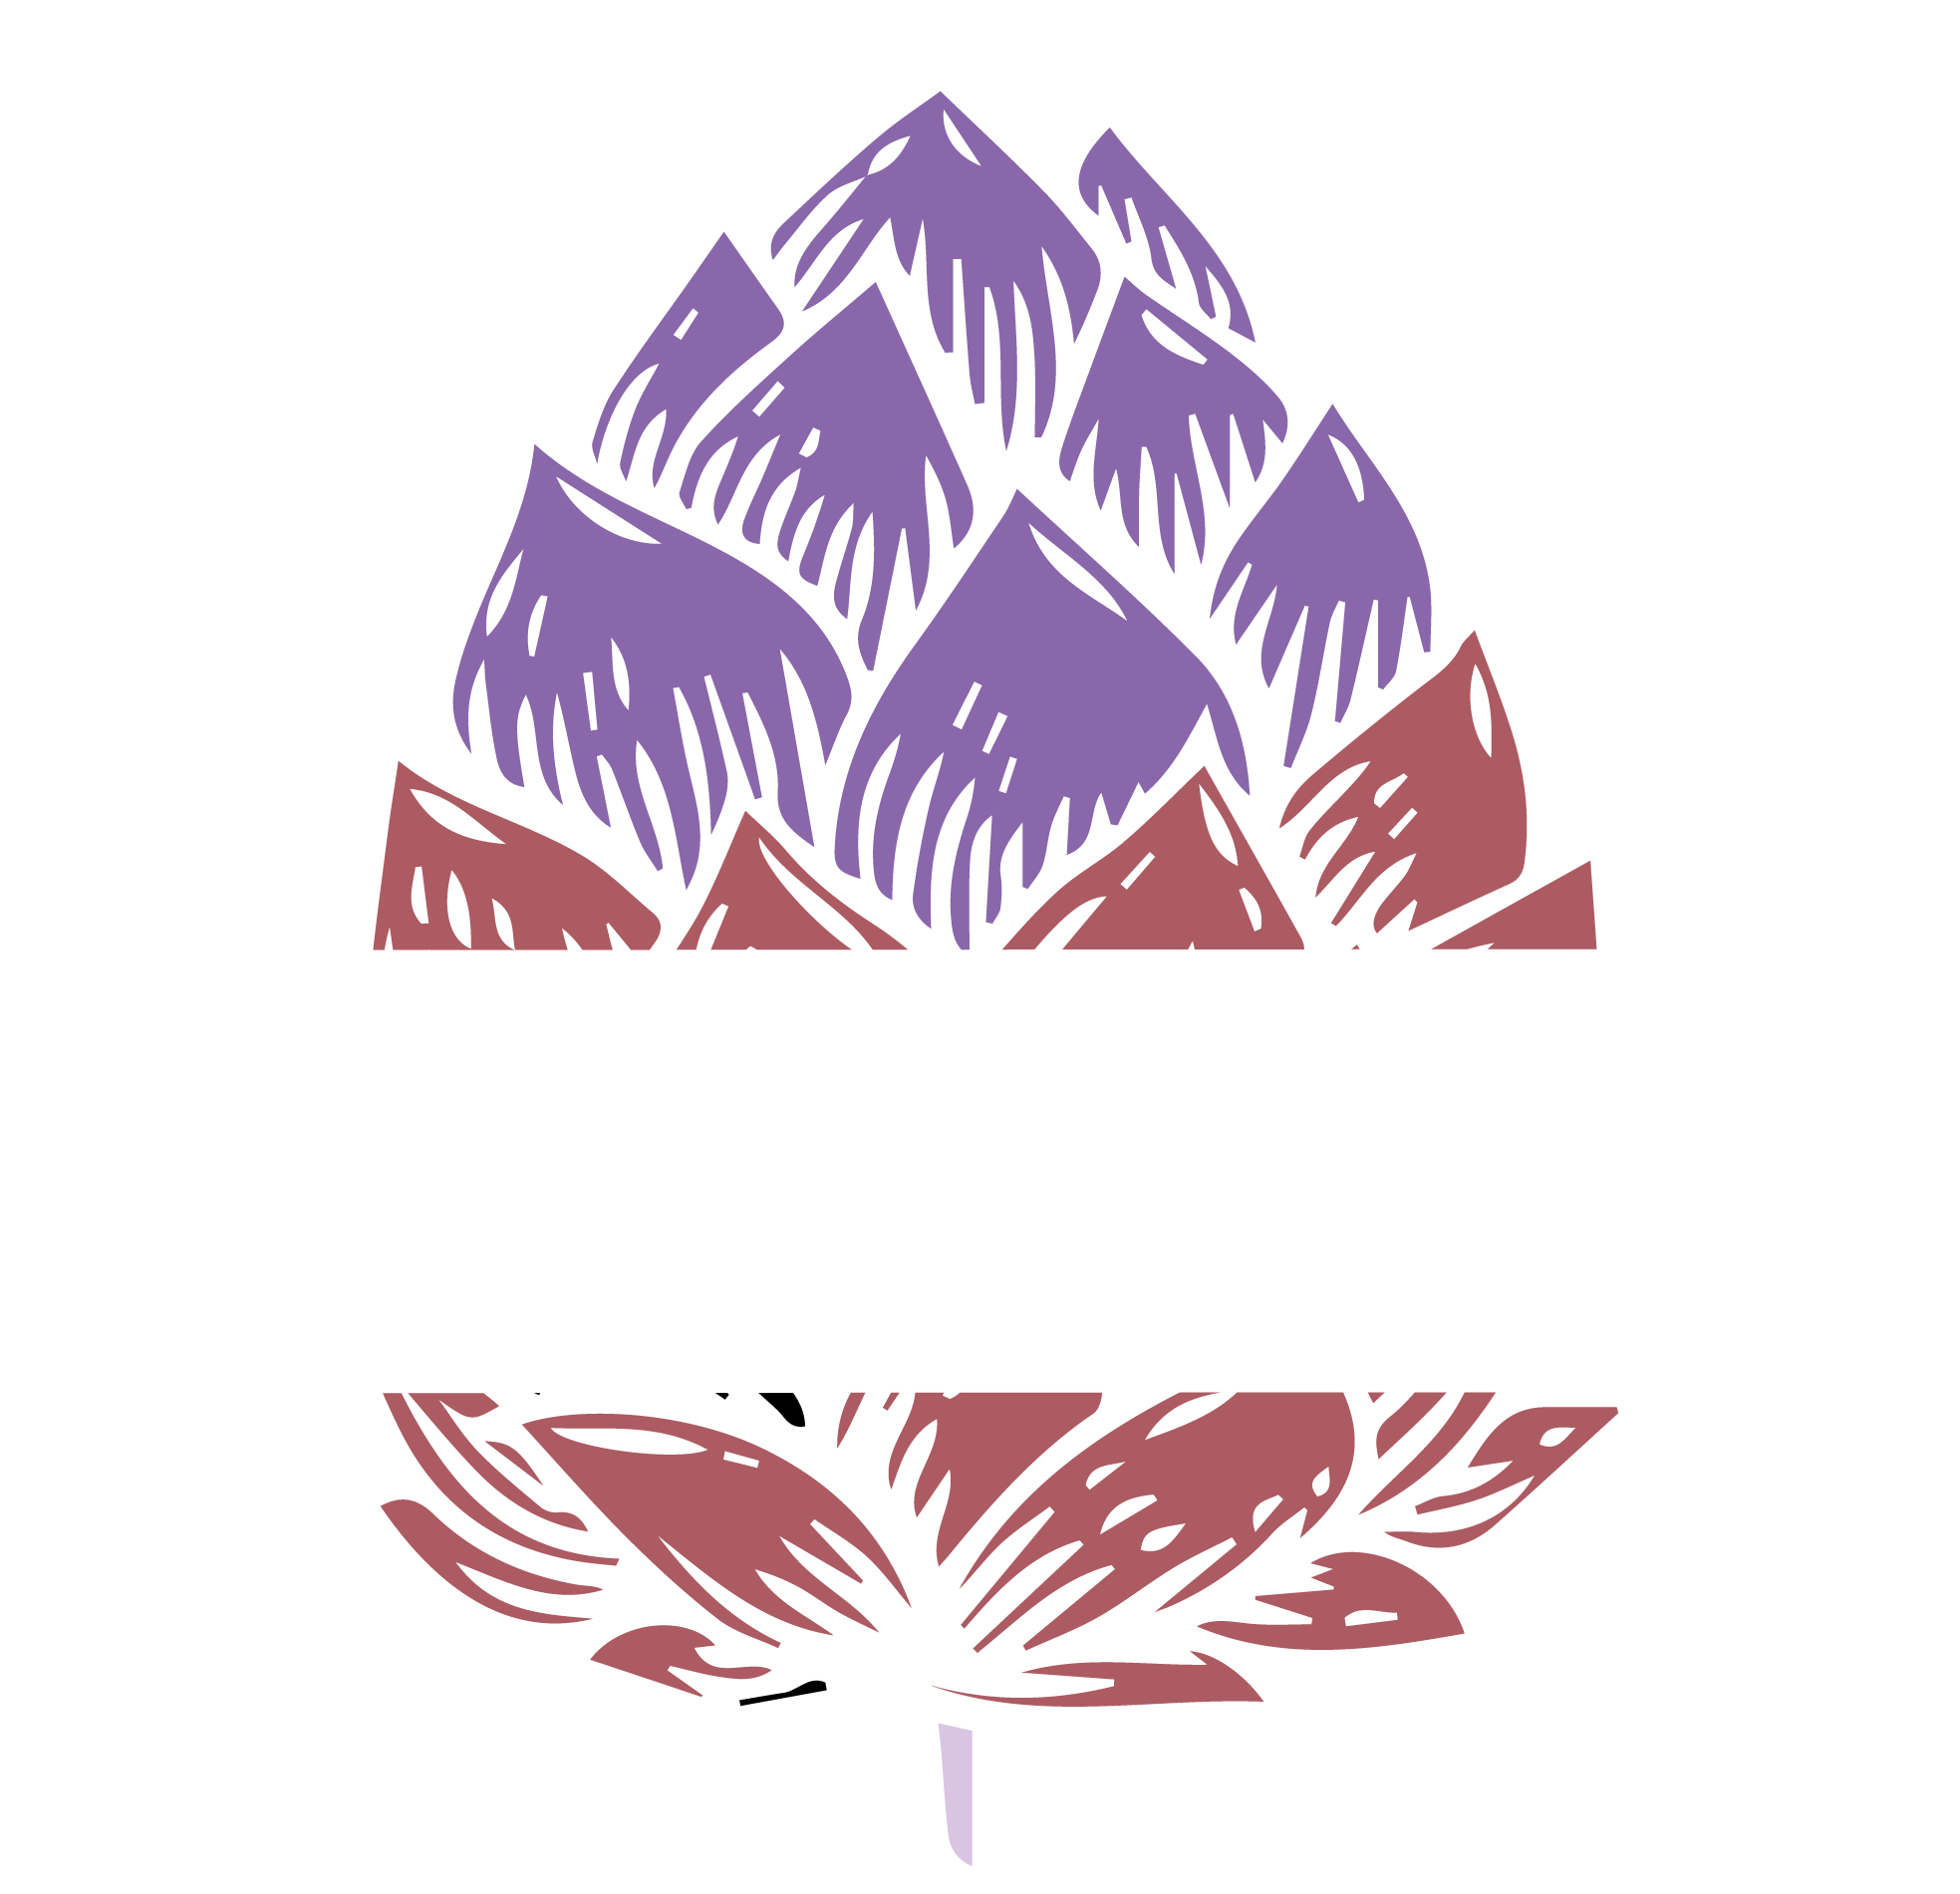 Mambar Beer House